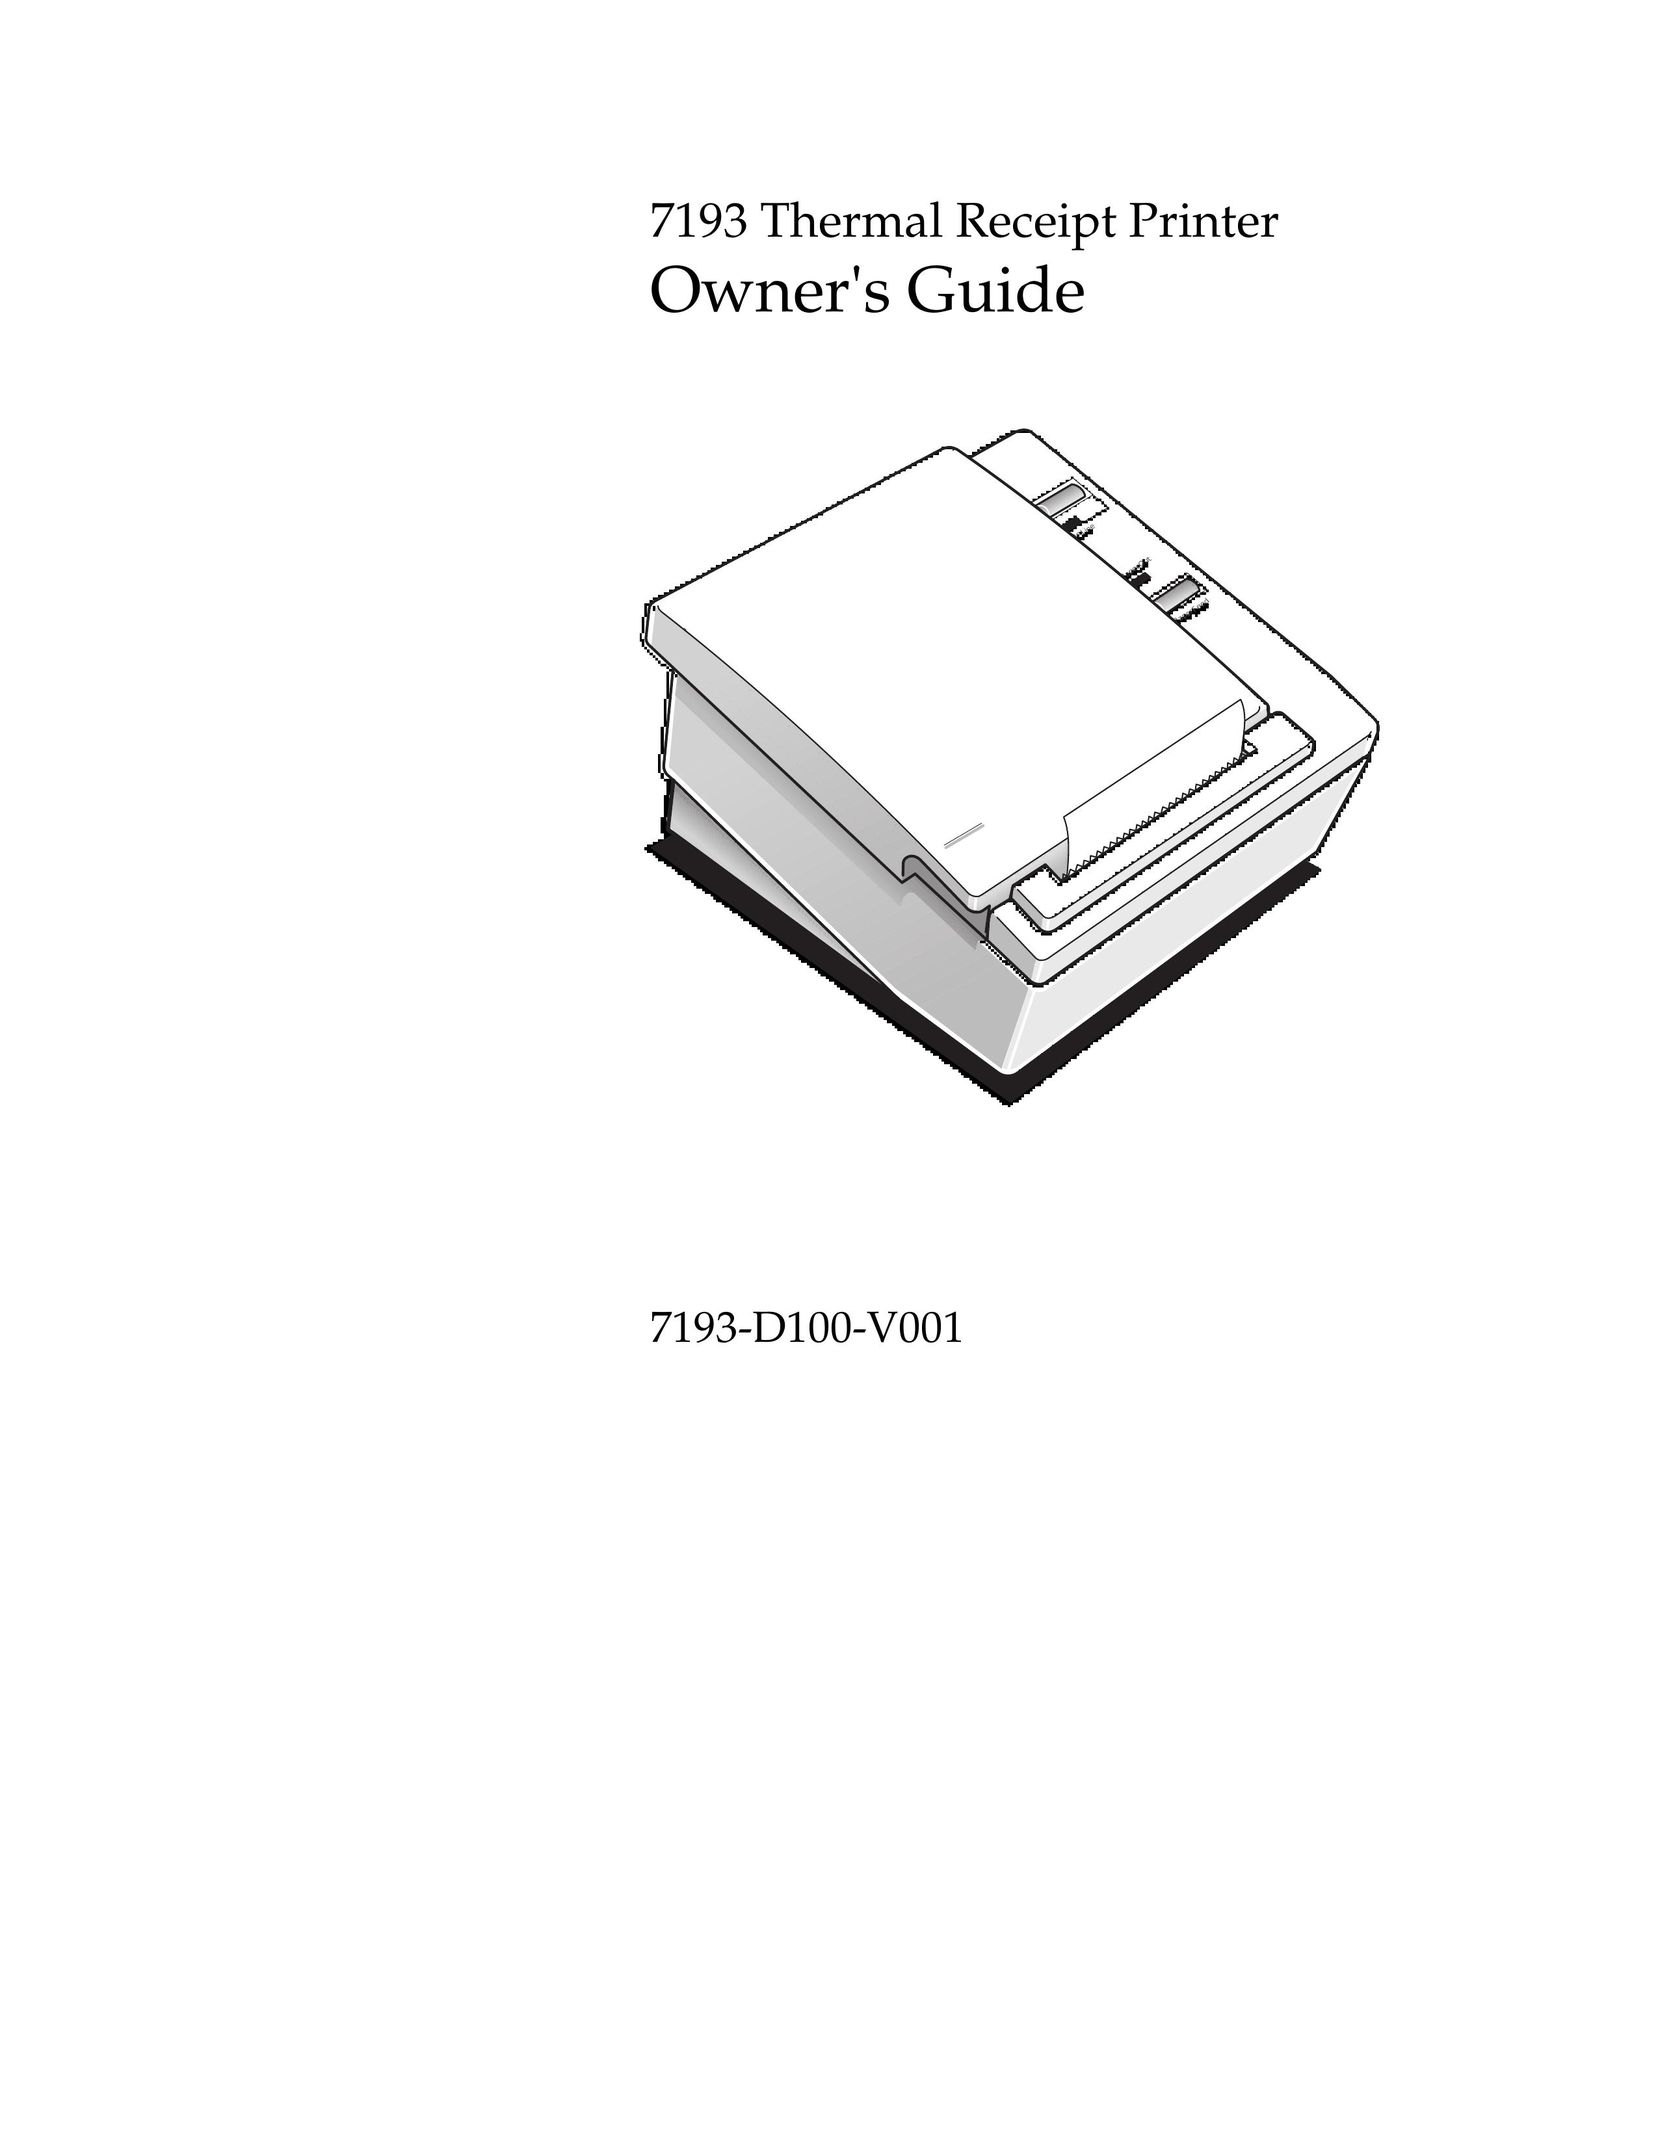 M-S Cash Drawer 7193 Printer User Manual